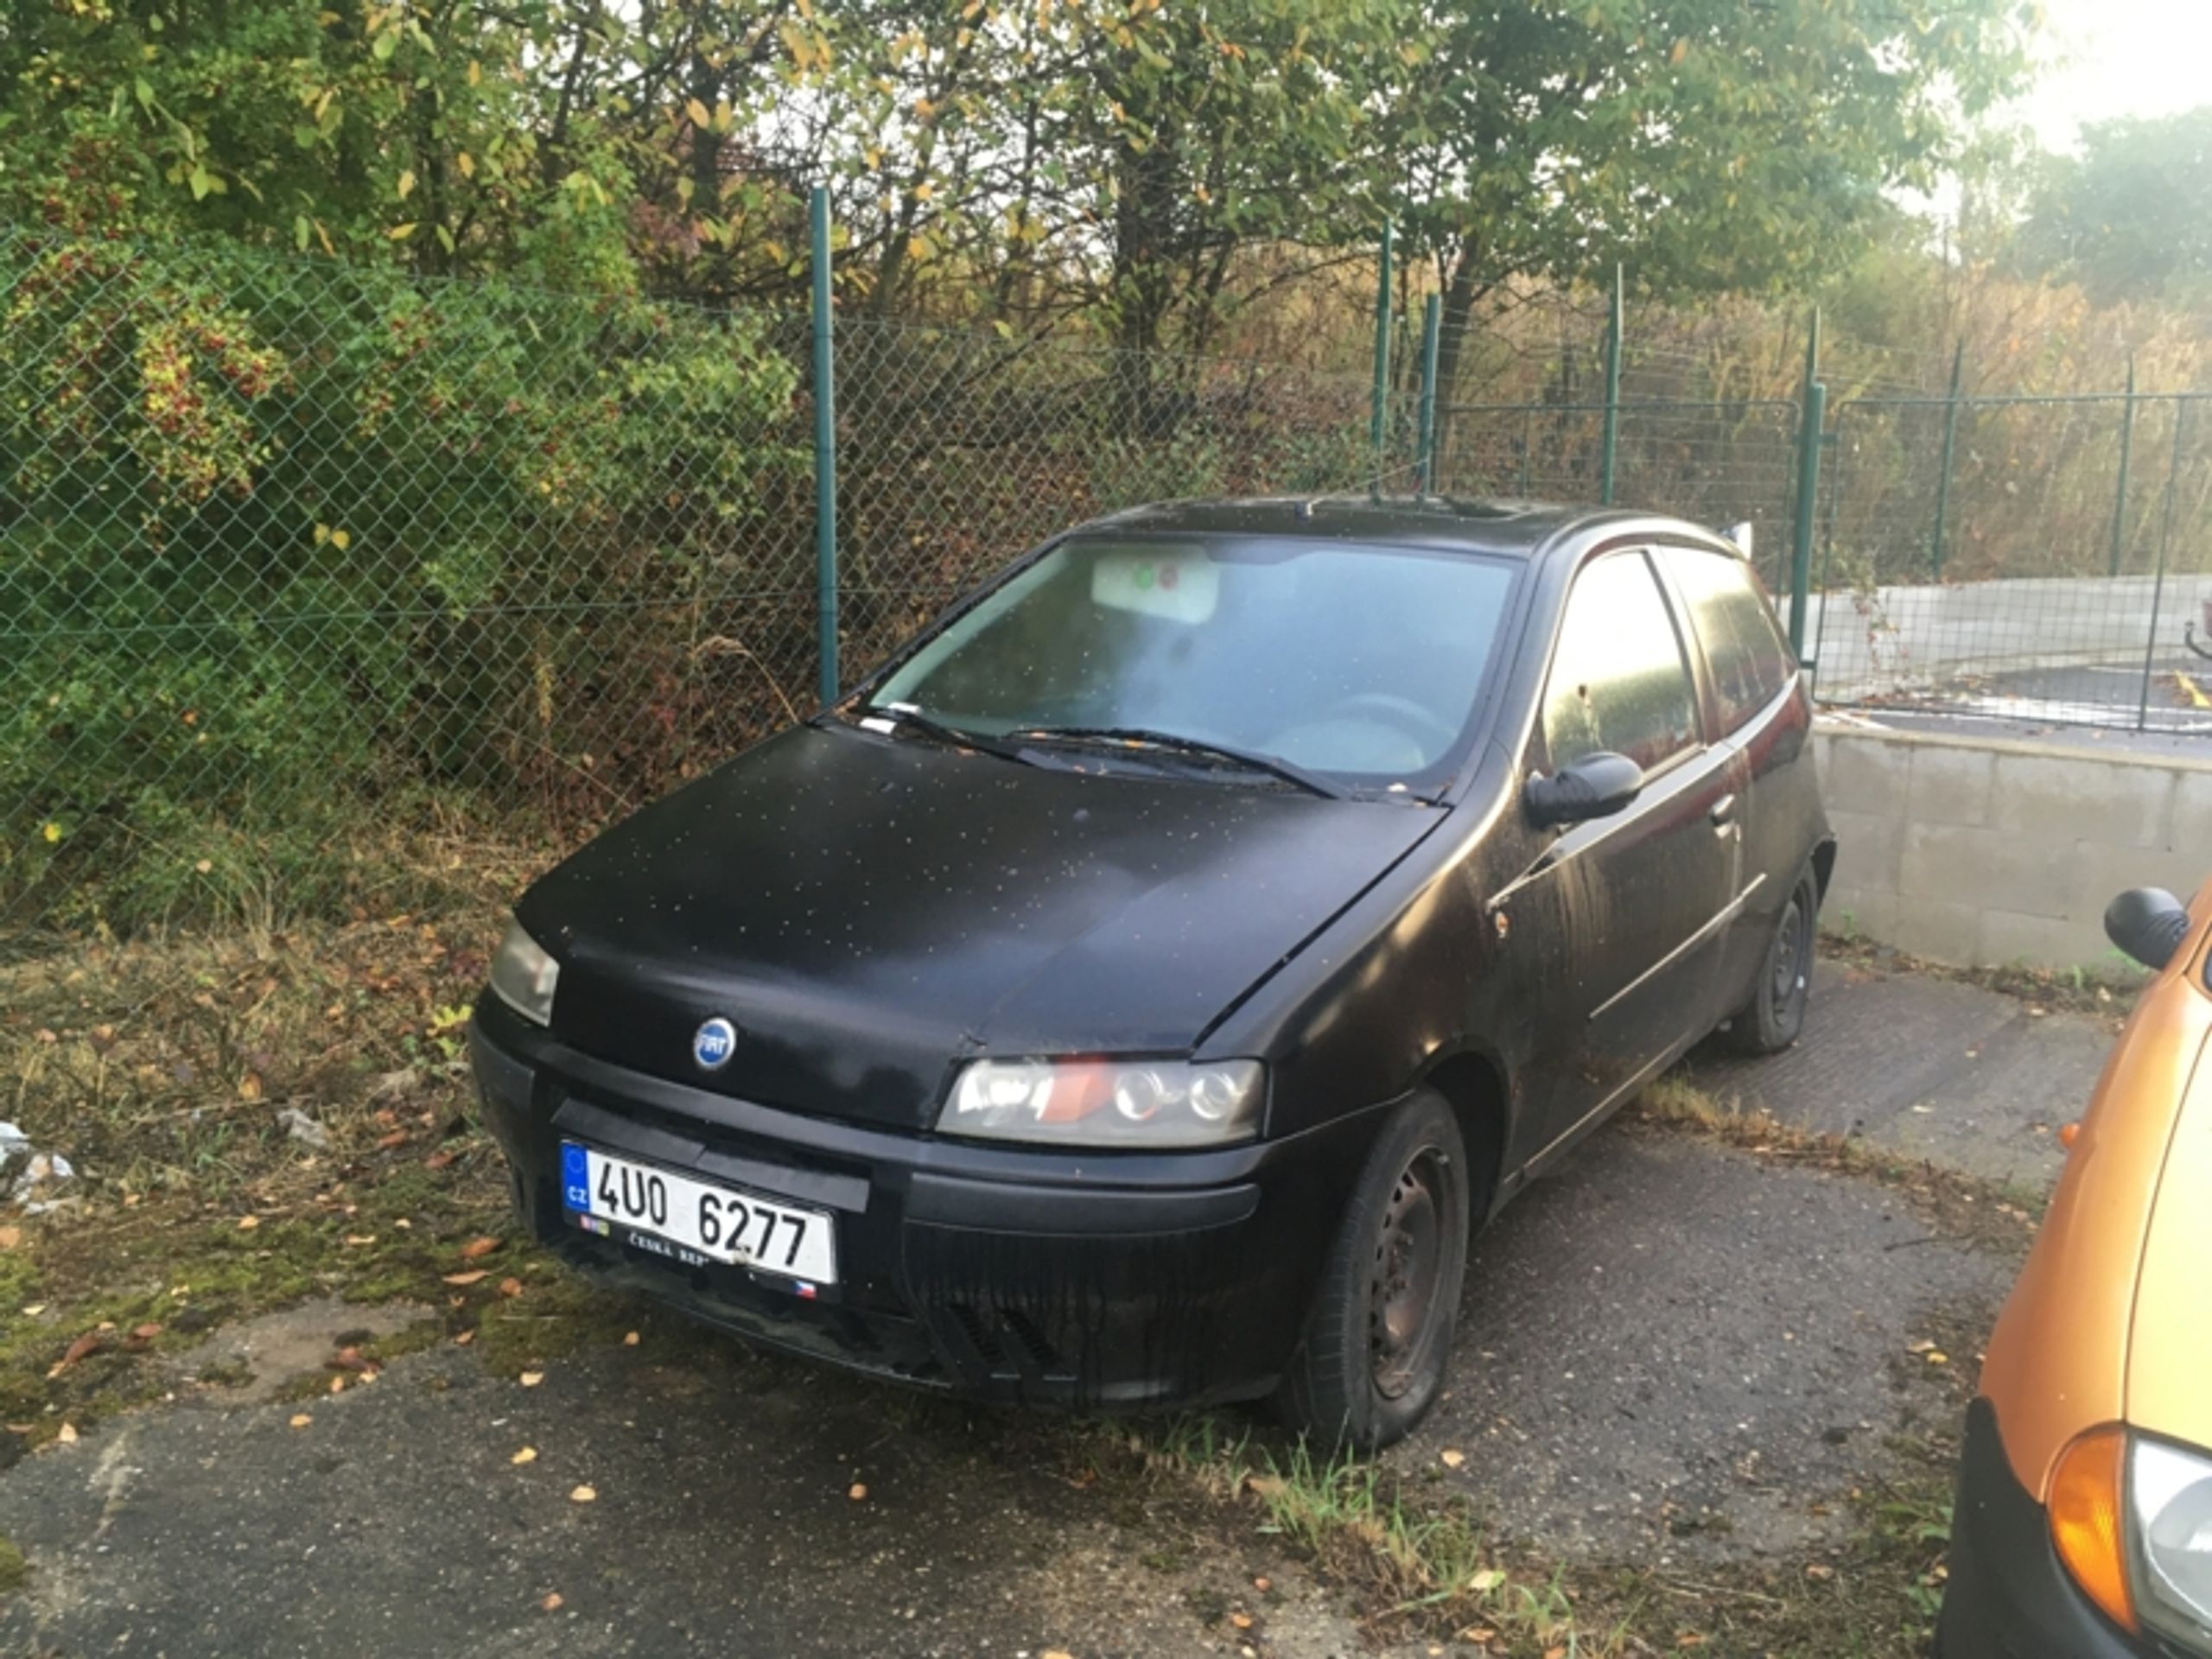 OA Fiat Punto - odhadní cena 900 Kč, nejnižší podání 300 Kč - Aukce aut, která blokovala ulice Ústí nad Labem (7/16)